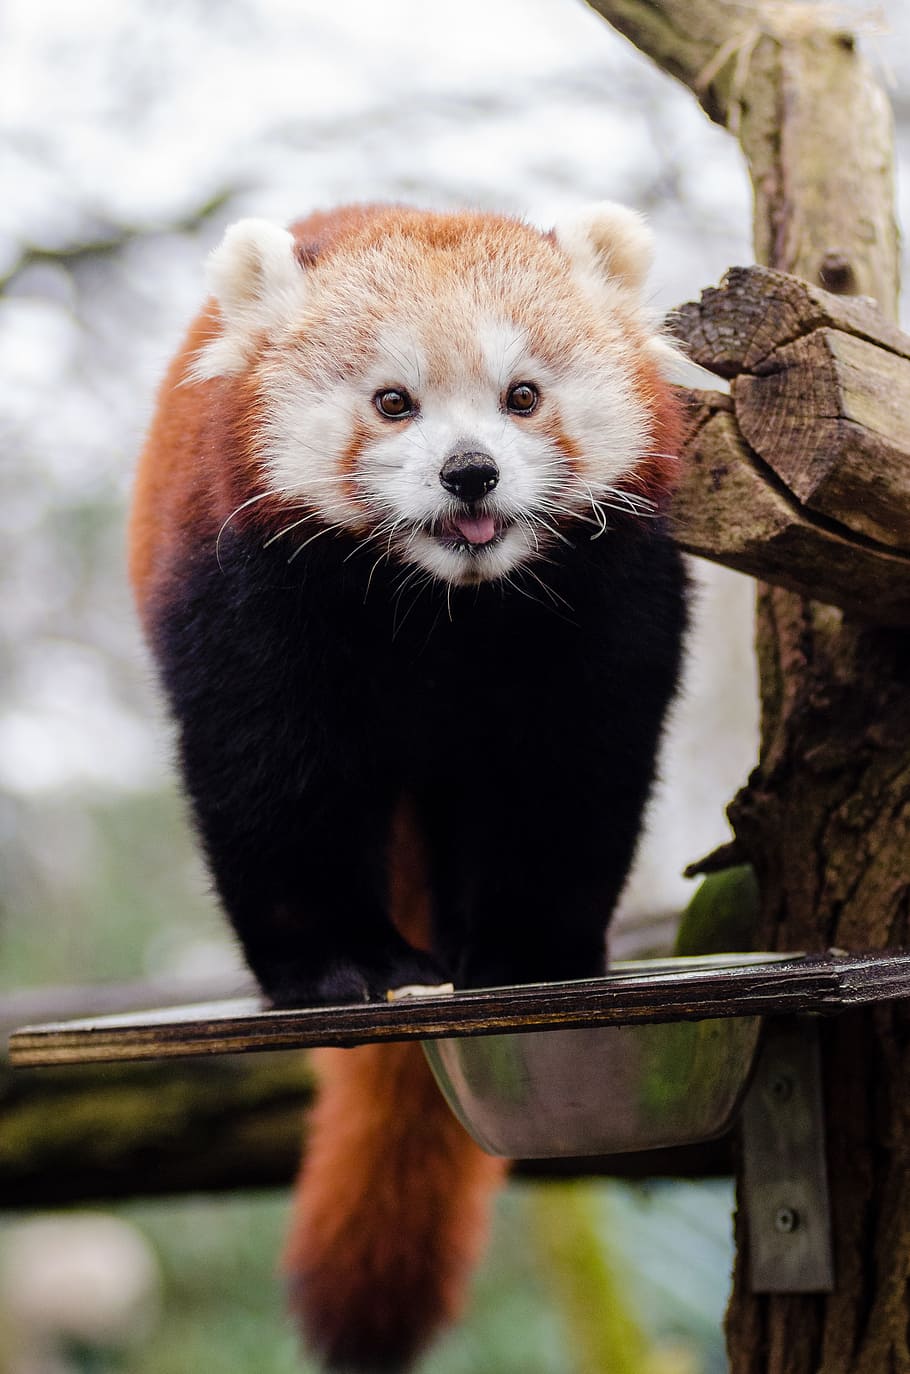 Panda vermelho, seletivo, foco, fotografia, vermelho, Panda, em pé, superfície, temas animais, mamífero